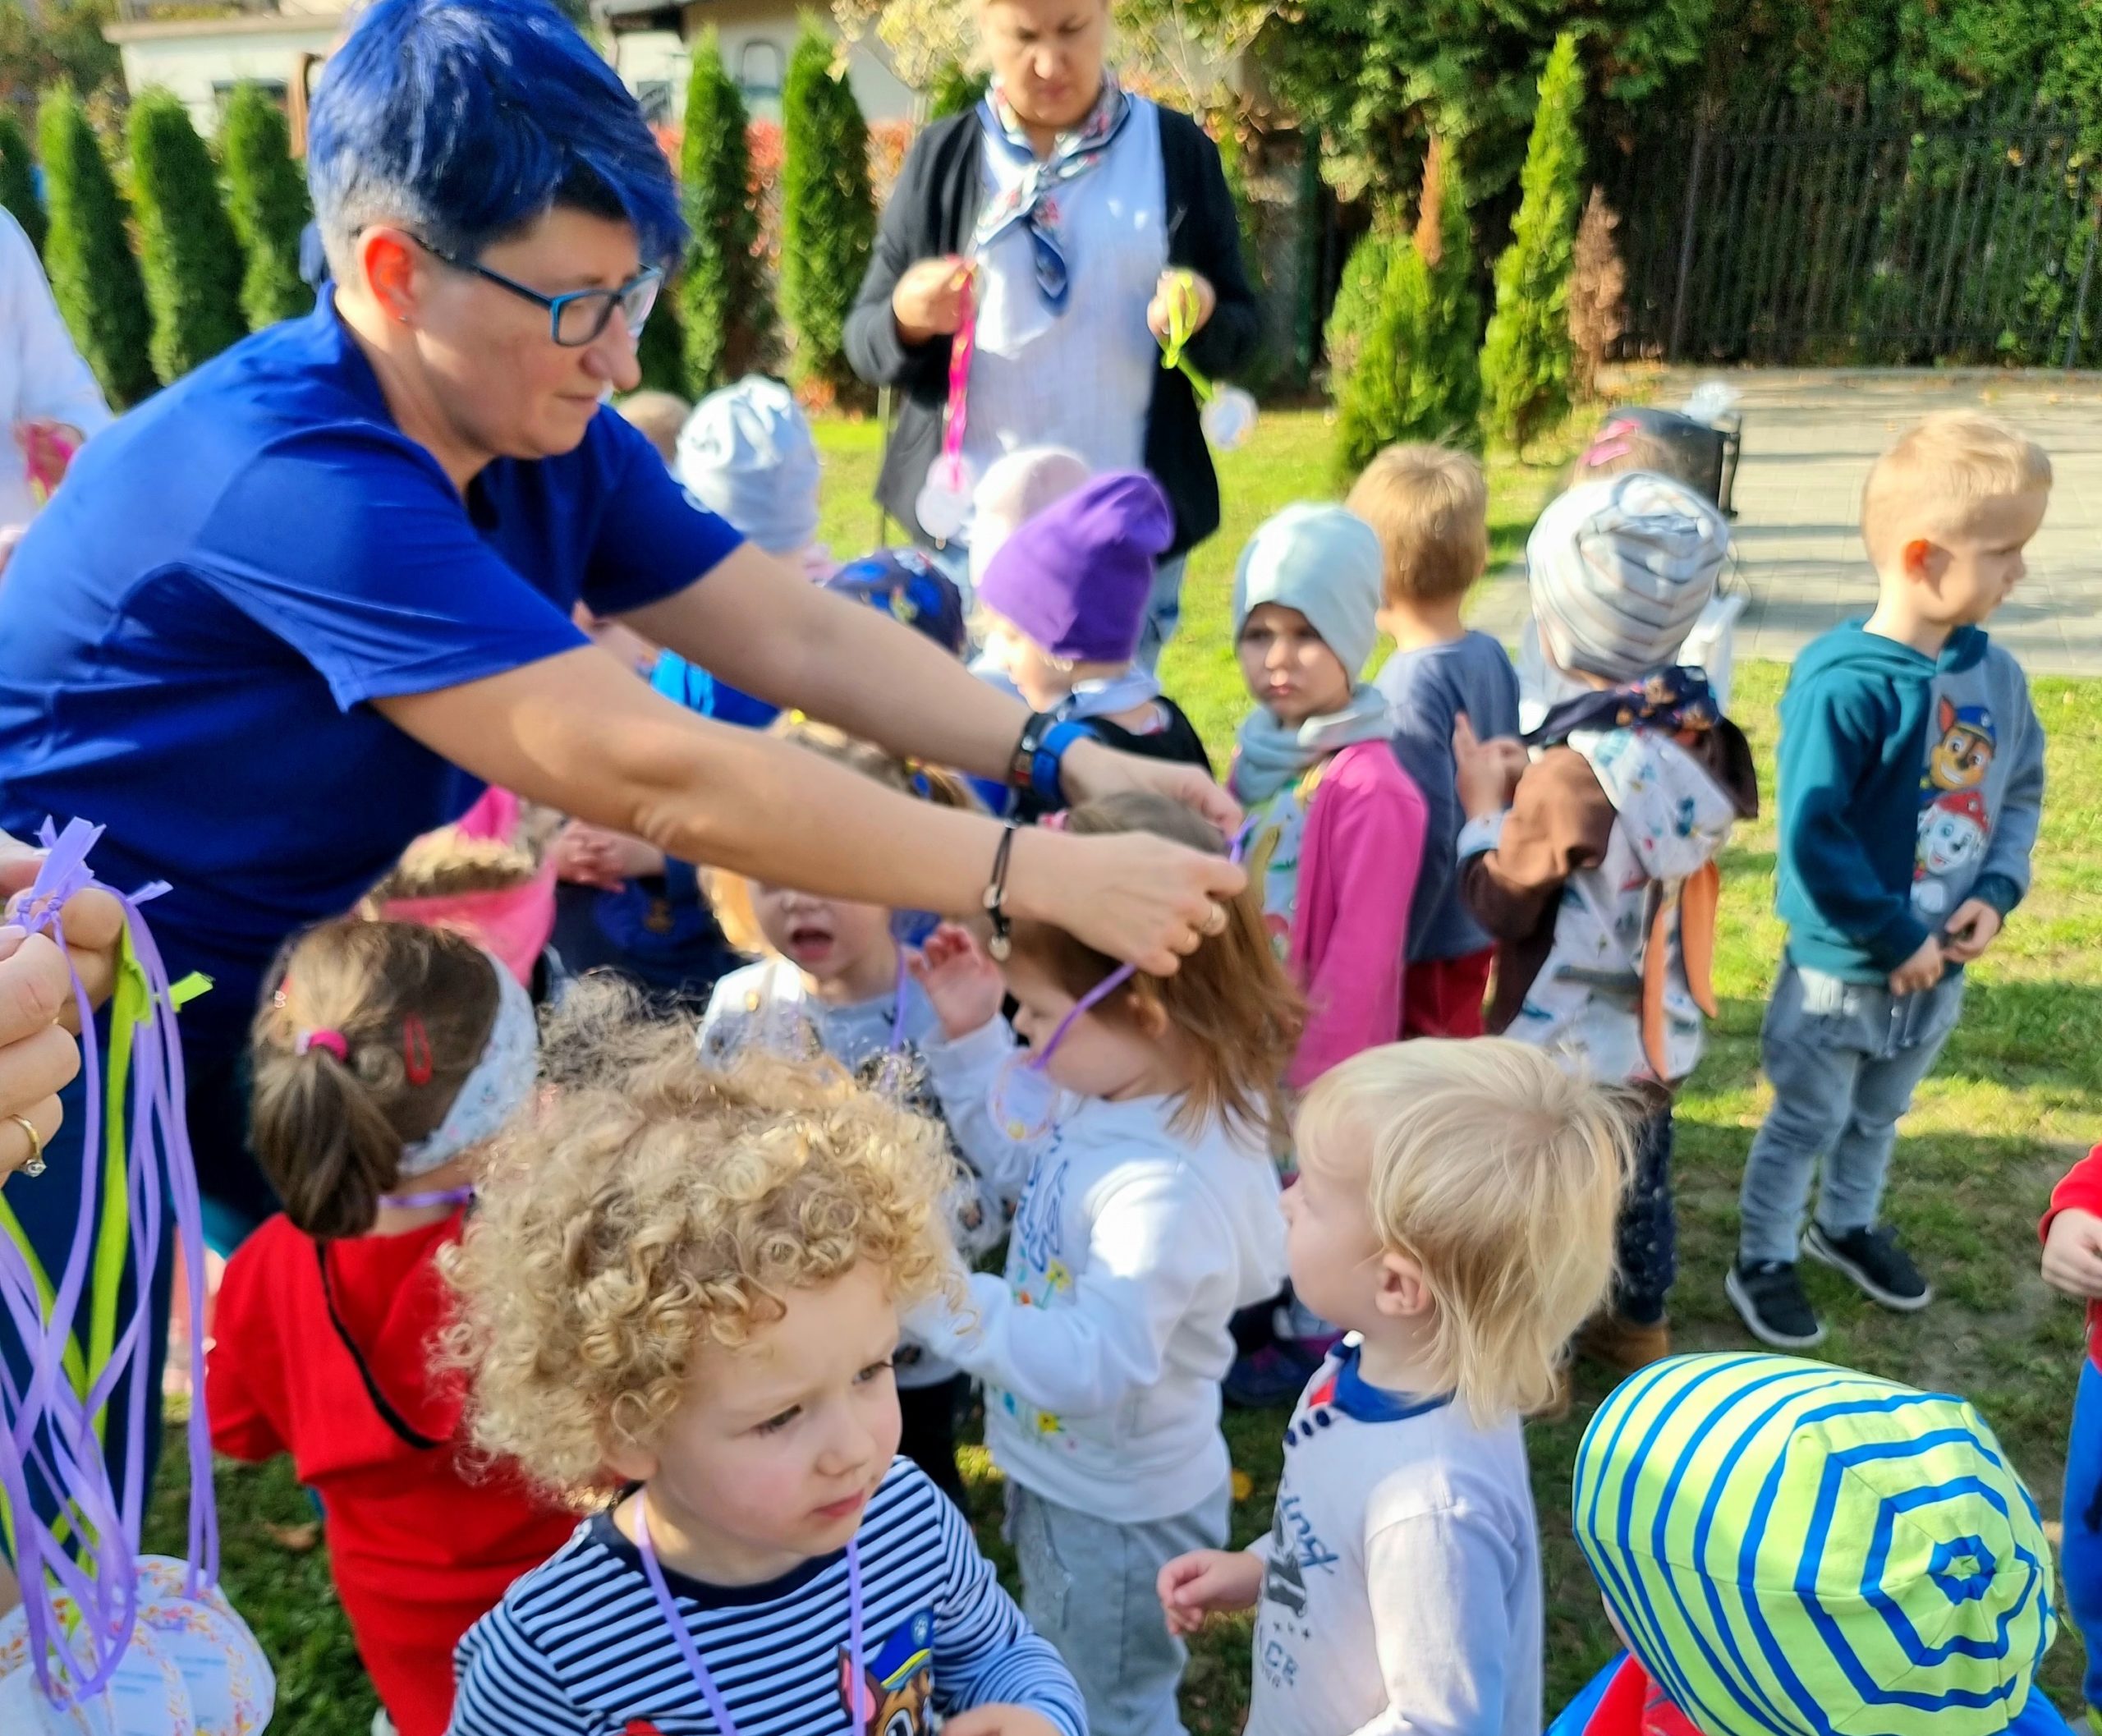 Kobieta z niebieskimim włosami rozdaje medale przedszkolakom za uczestnictwo w olimpiadzie.